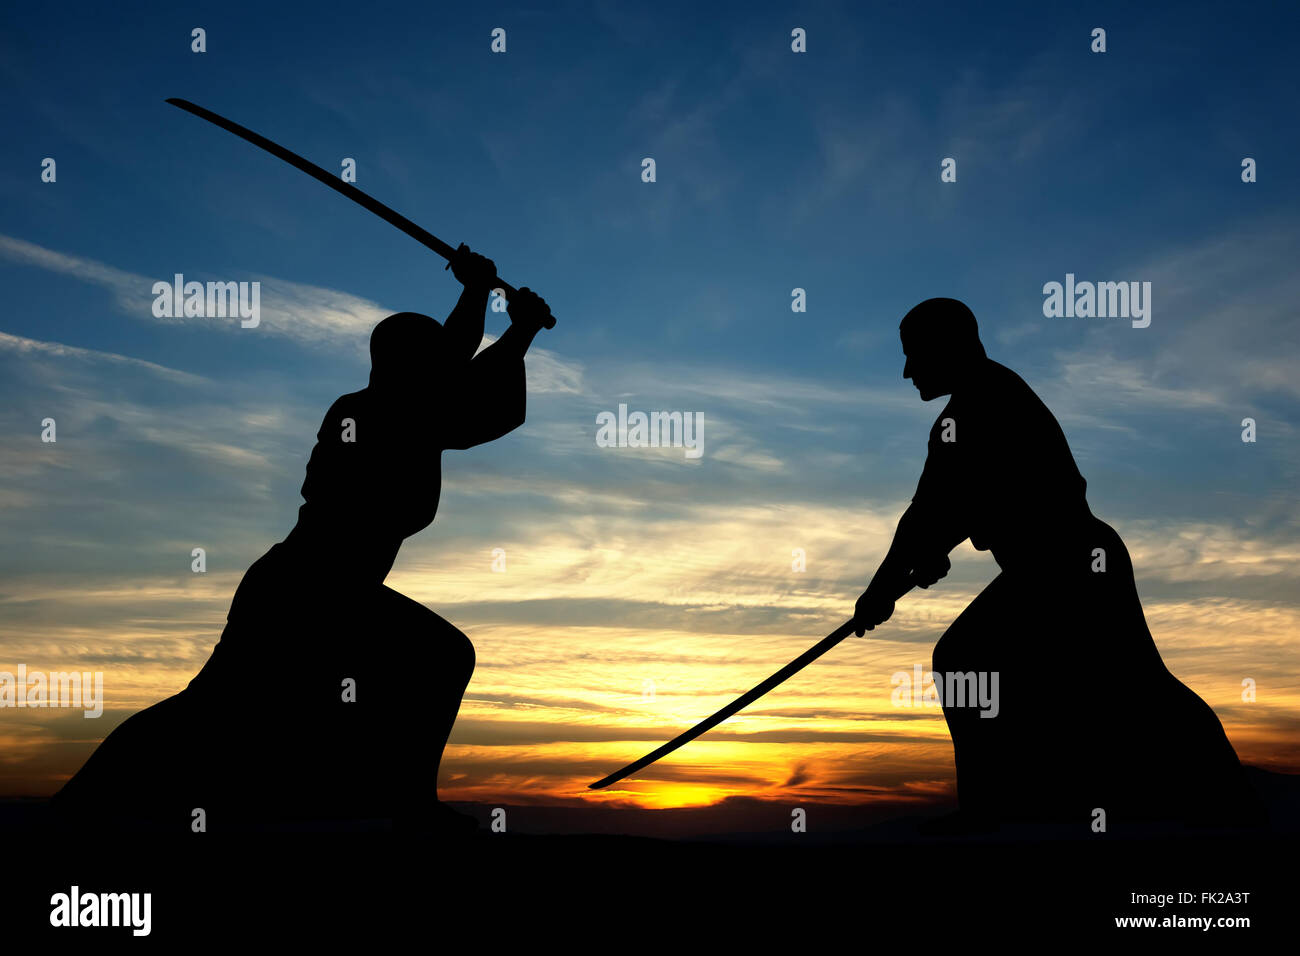 Kampfkunst Schwert bekämpfen Silhouetten Abbildung auf Sonnenuntergang Hintergrund Stockfoto